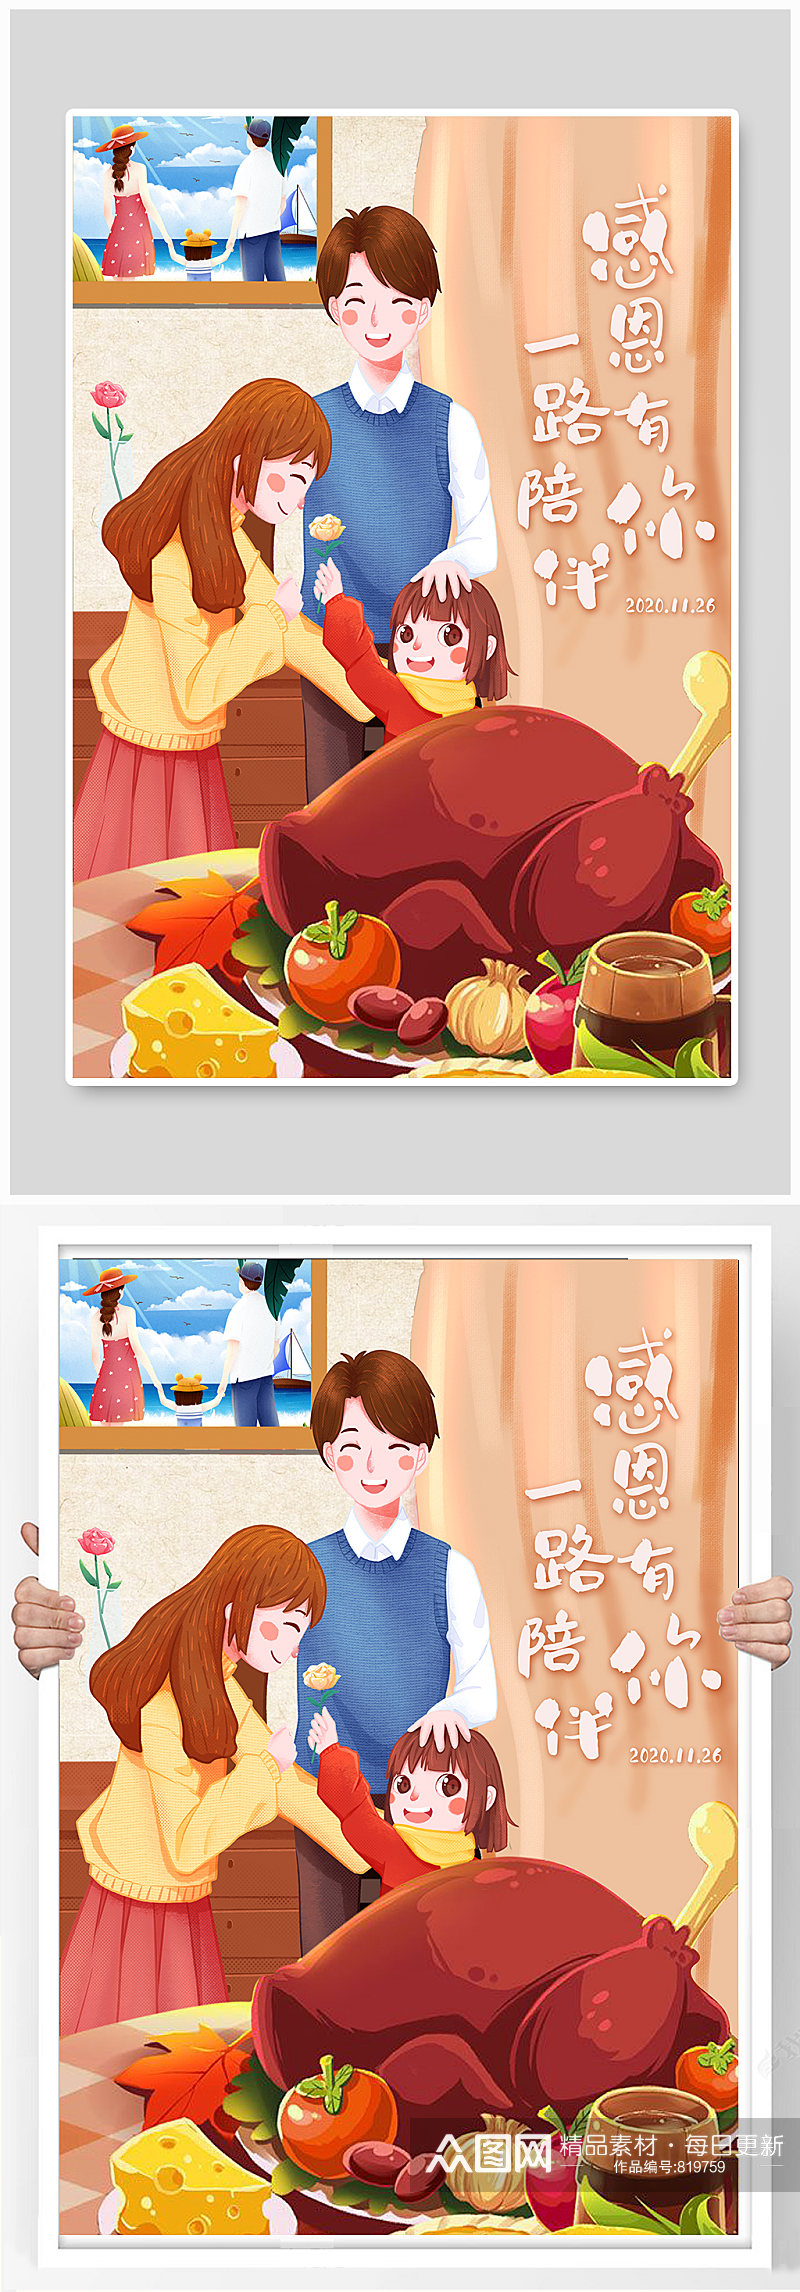 手绘感恩节一家人吃鸡宣传节日海报素材